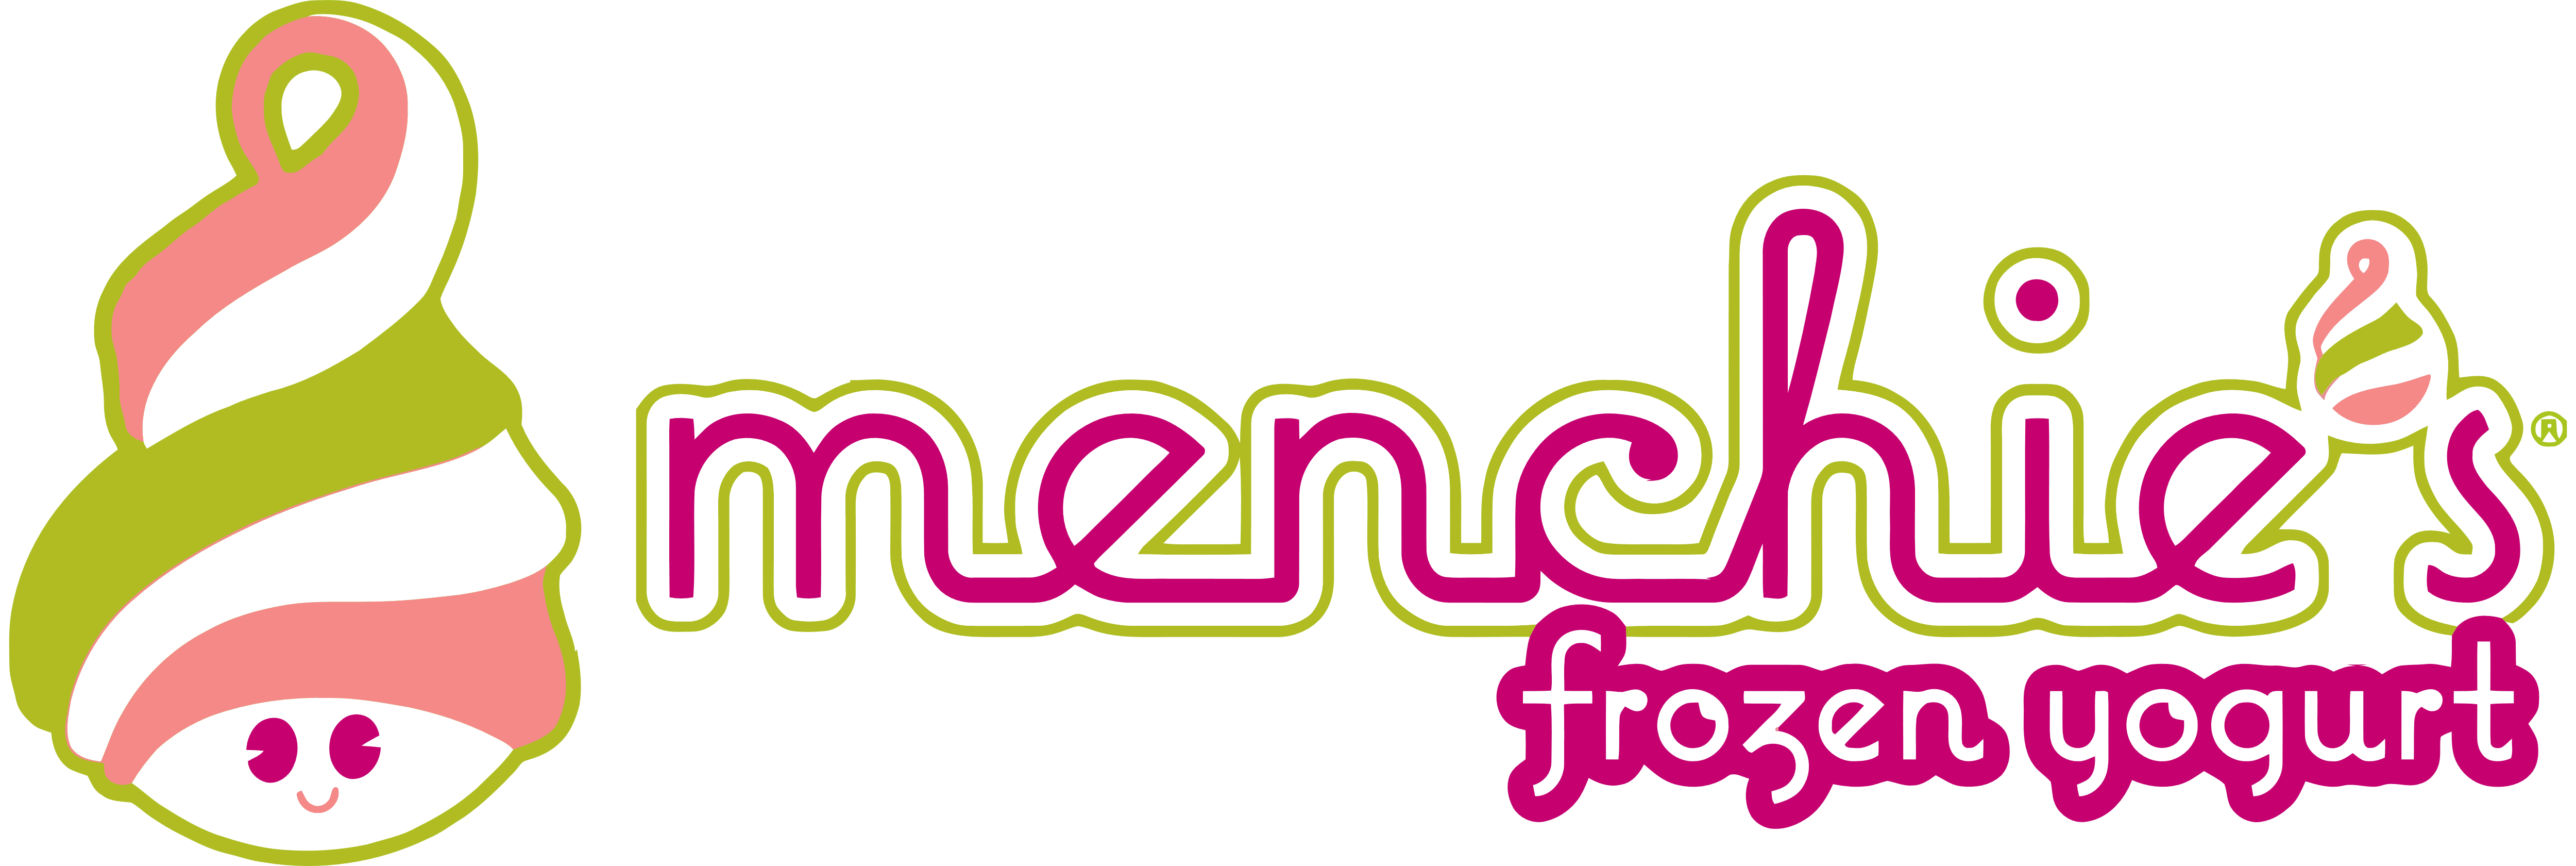 Menchie’s Frozen Yogurt – Logos Download